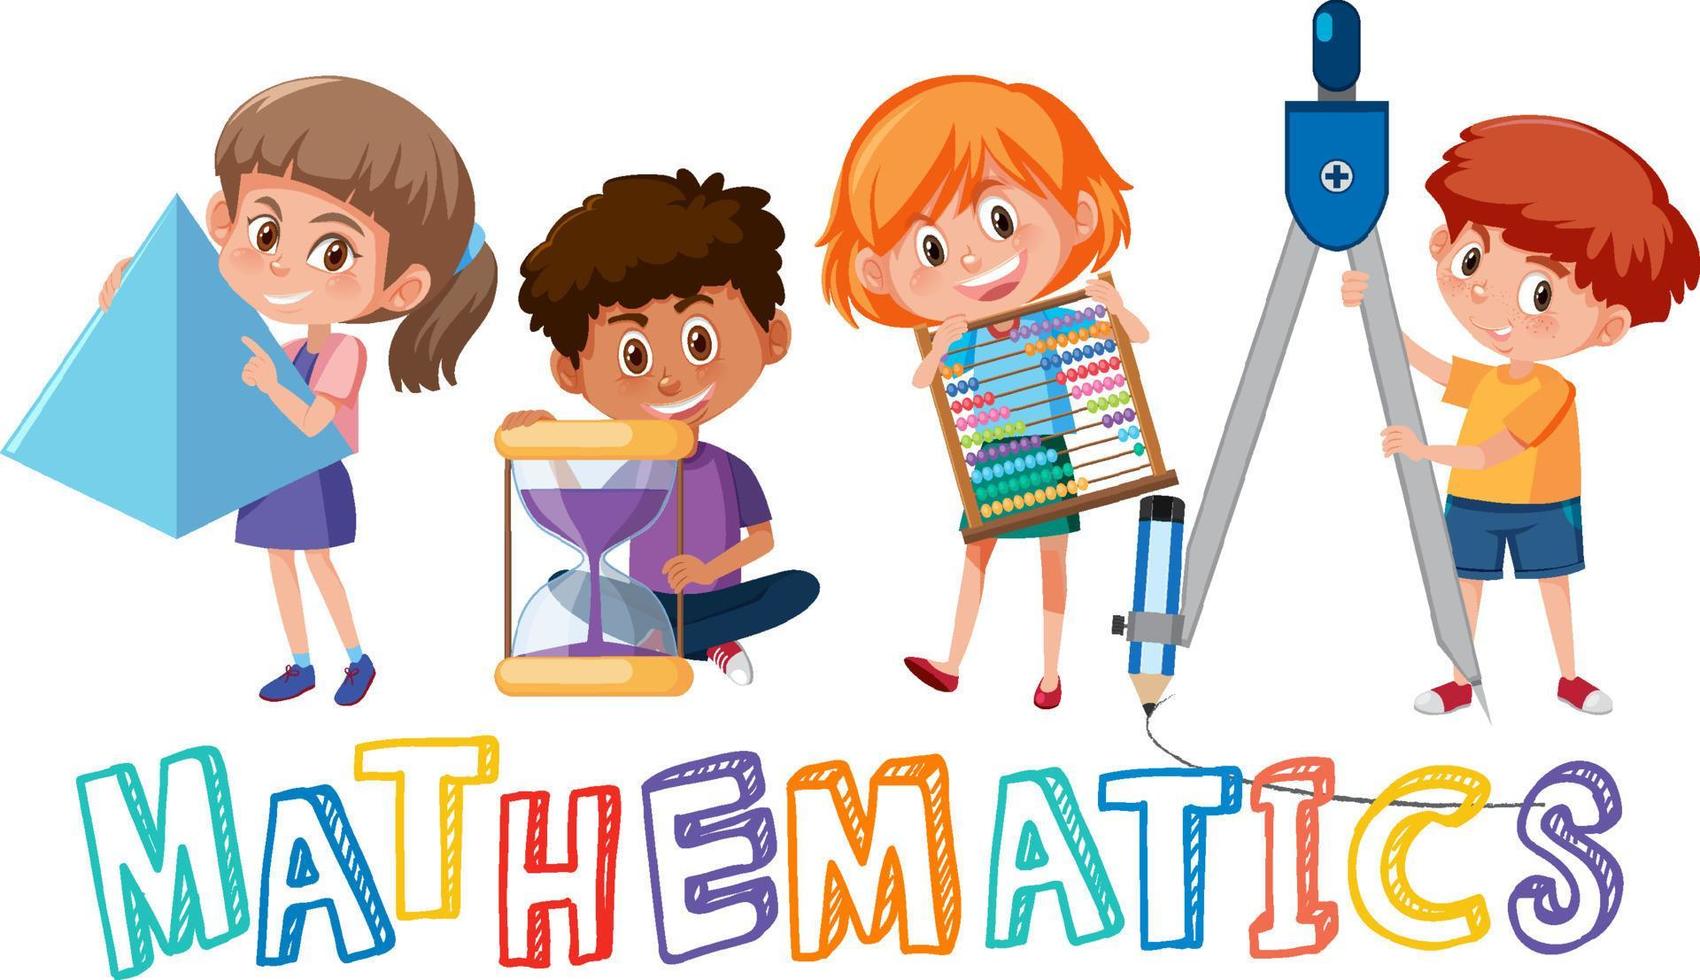 bambini con strumenti matematici e simbolo matematico scarabocchio vettore